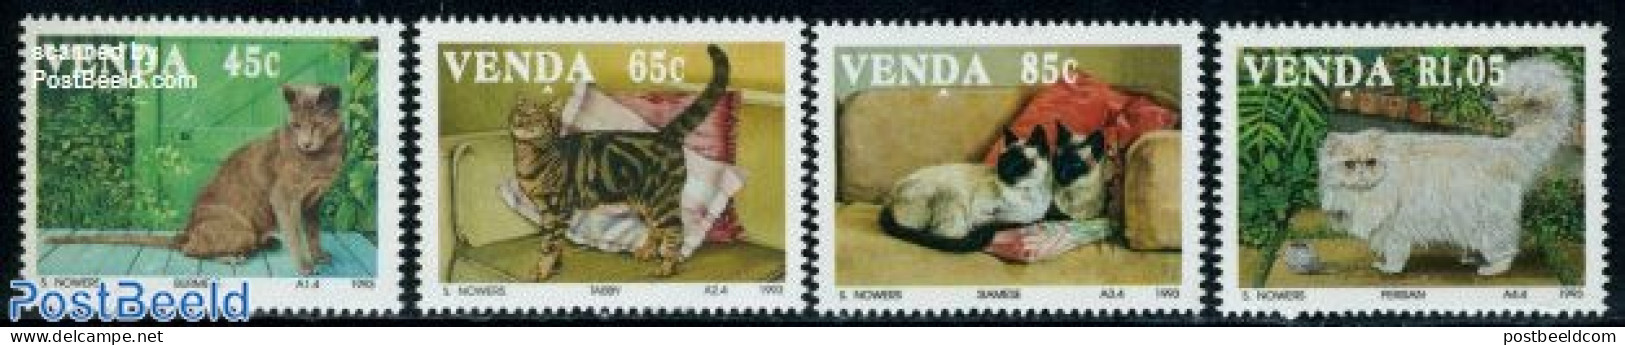 South Africa, Venda 1993 Cats 4v, Mint NH, Nature - Cats - Venda